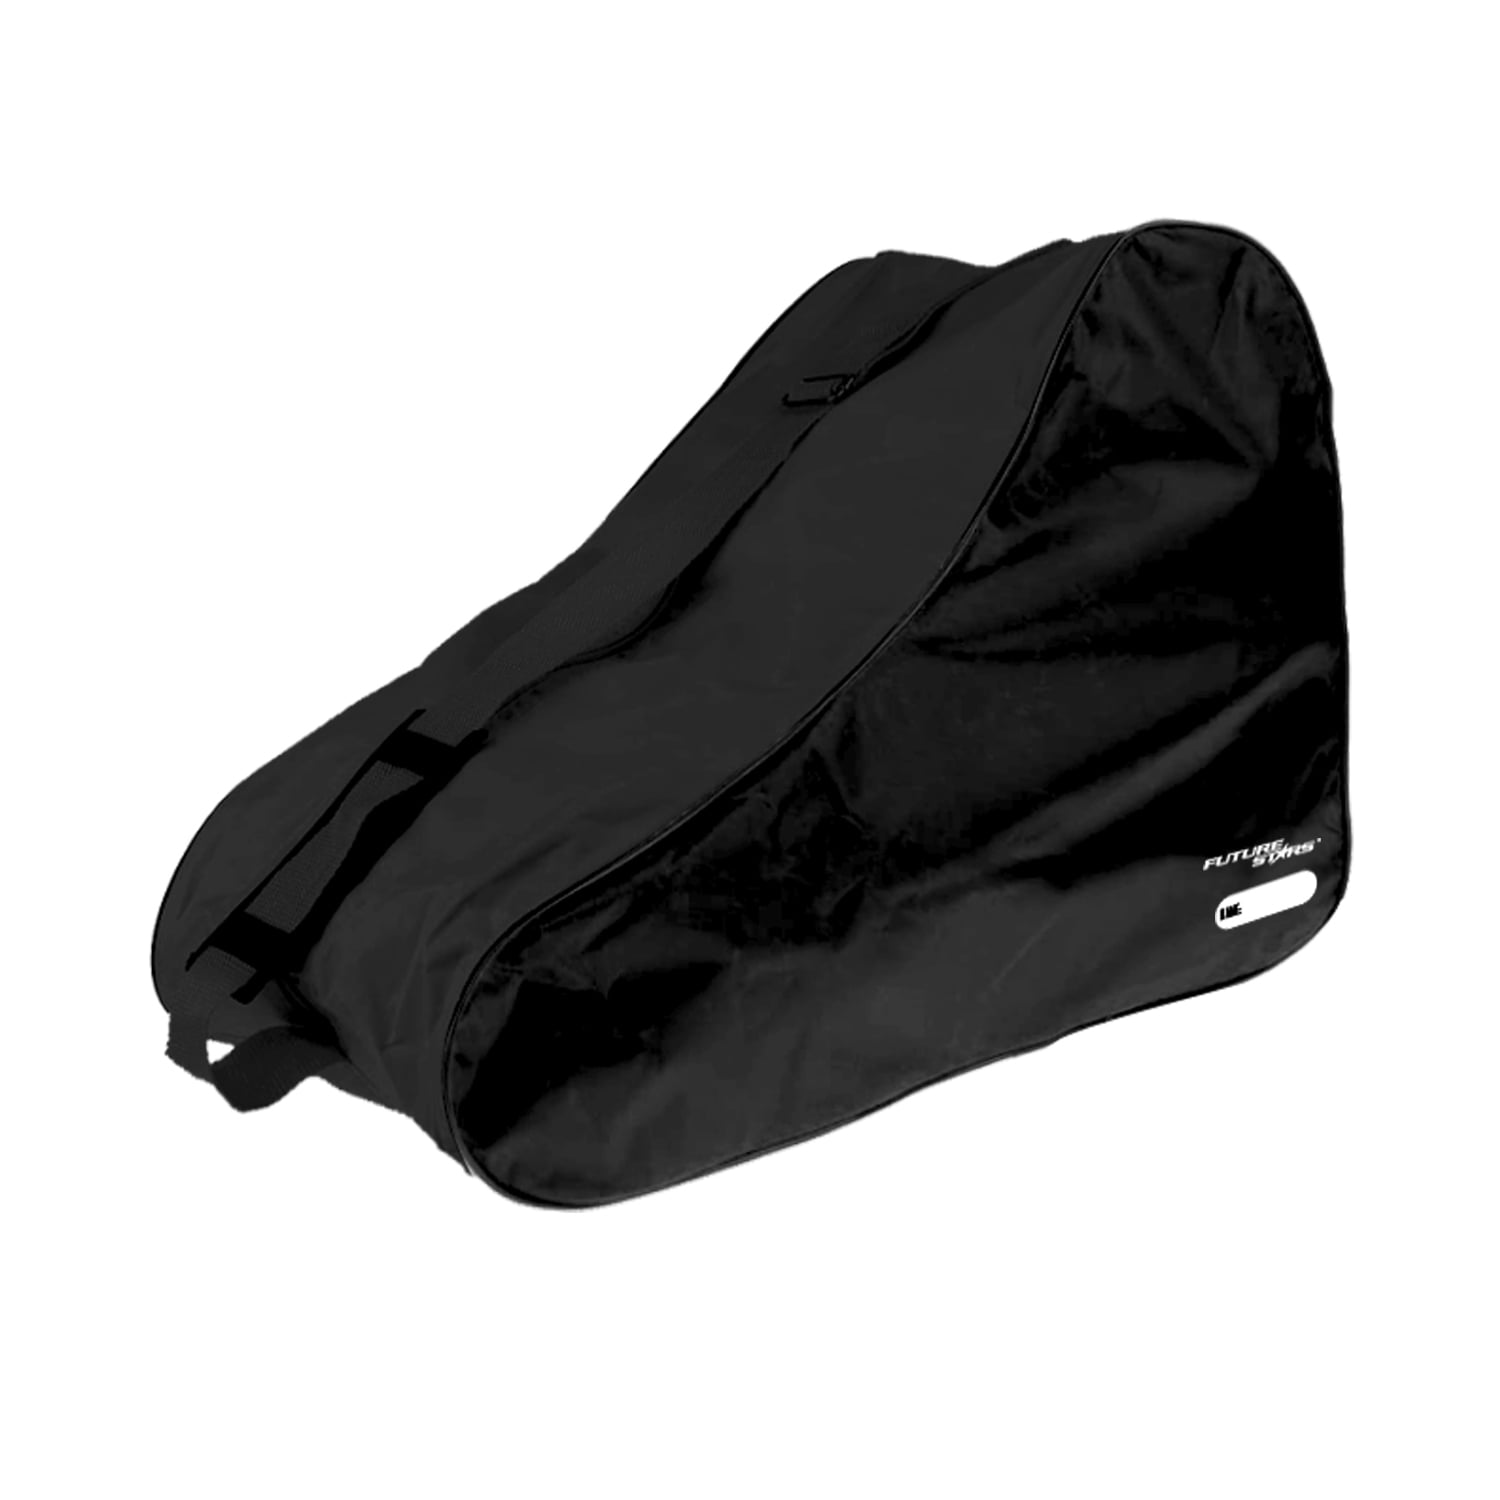 Bauer Large Ice and Quad Skate Bag Black 